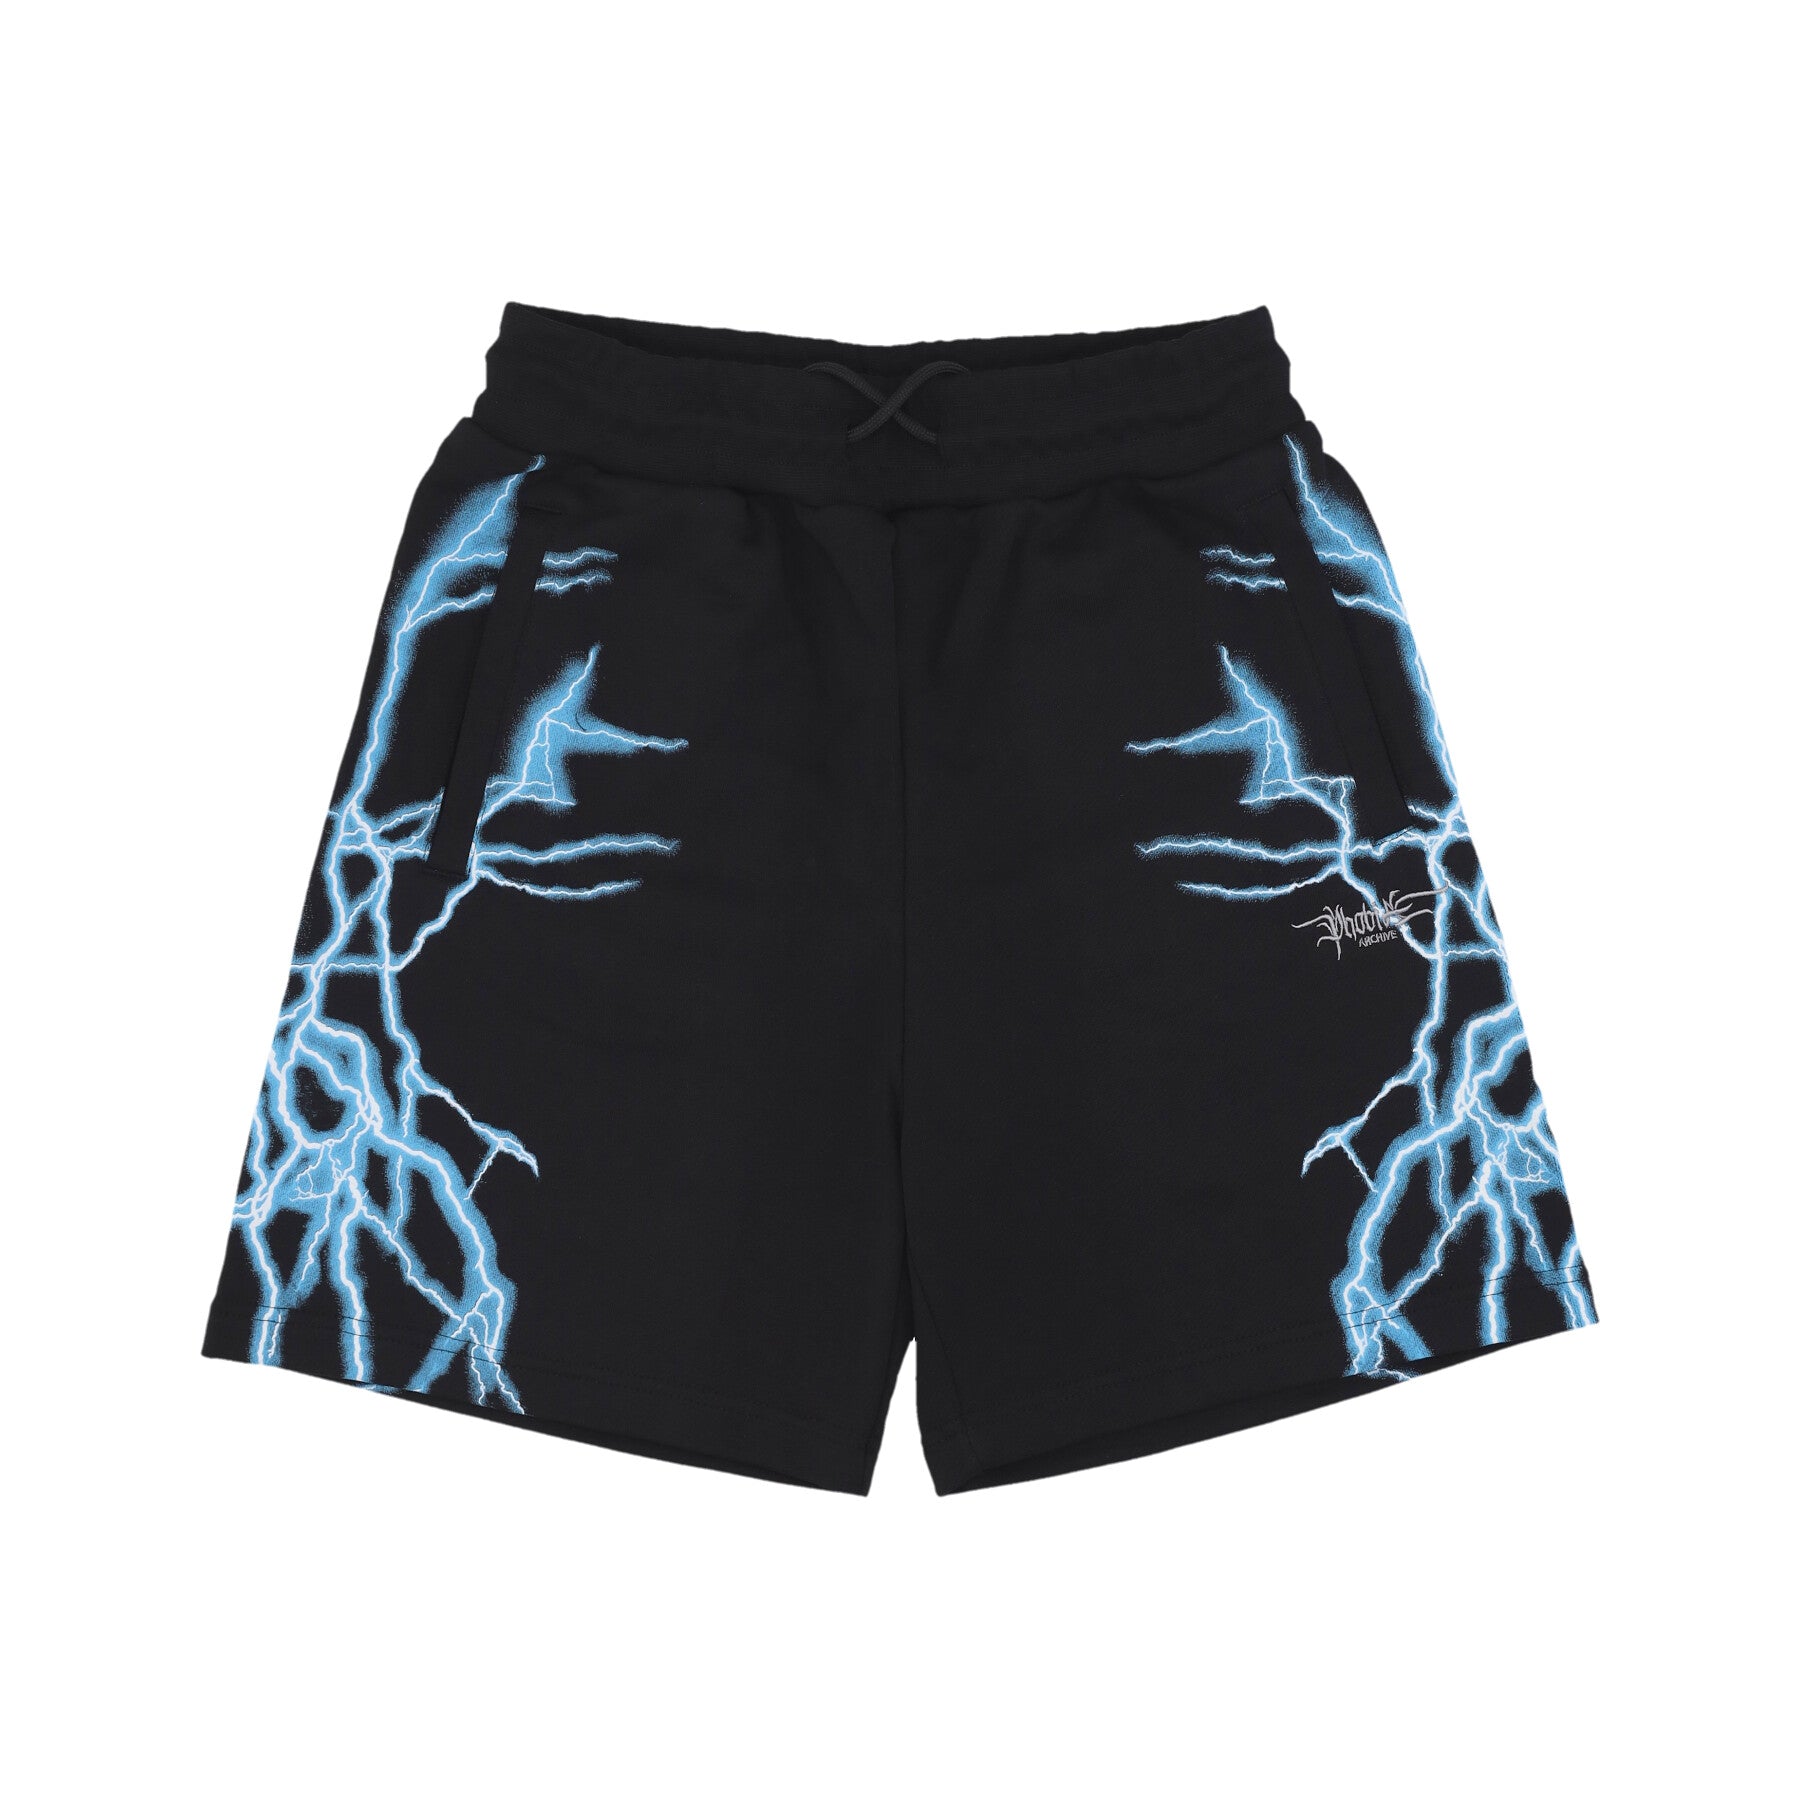 Pantalone Tuta Leggero Uomo Lateral Lightning Print Shorts Black/light Blue PH00567